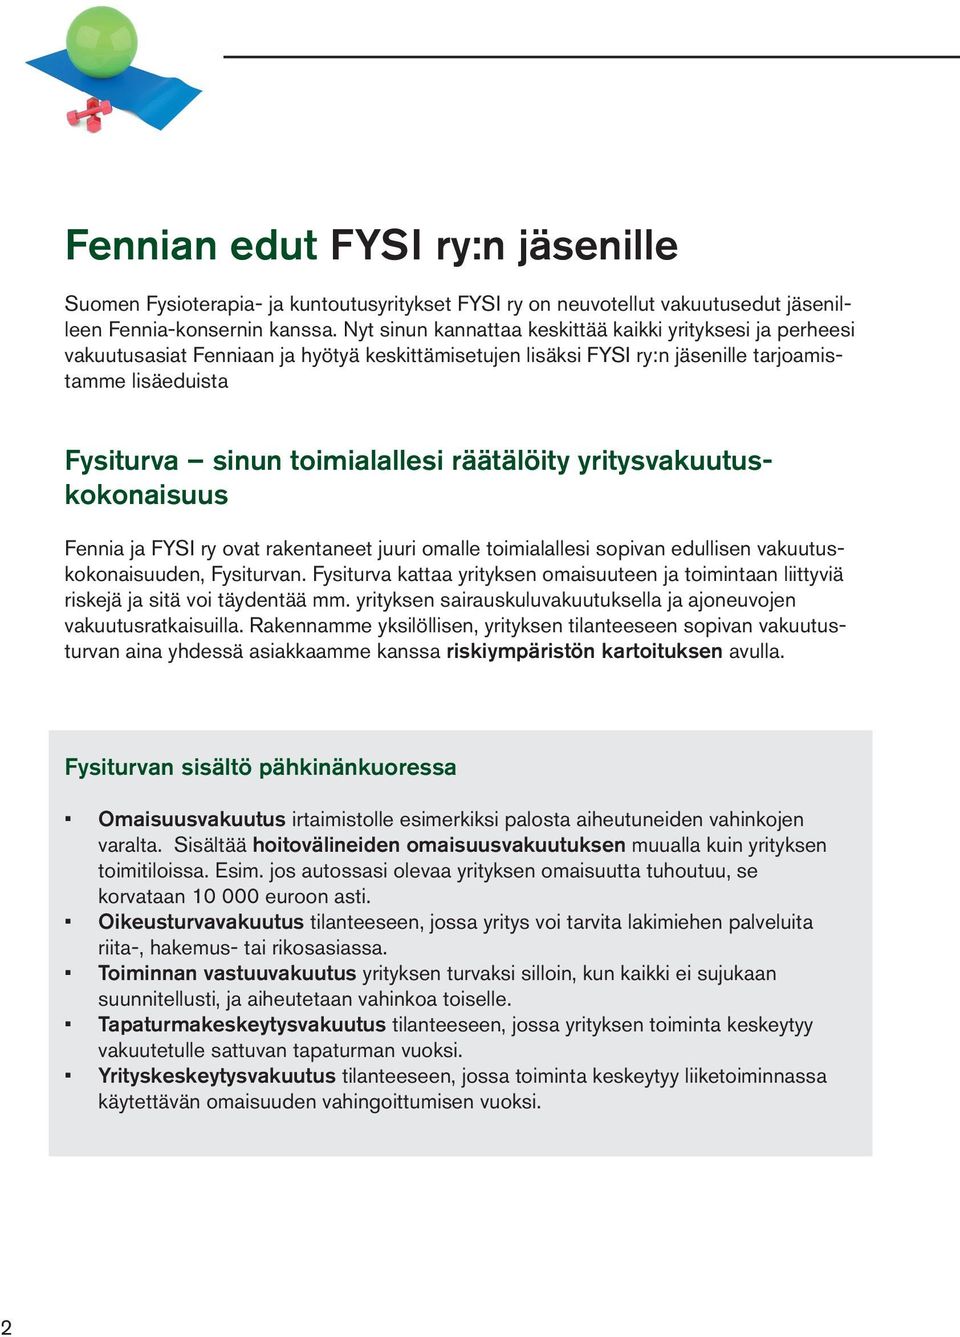 räätälöity yritysvakuutuskokonaisuus Fennia ja FYSI ry ovat rakentaneet juuri omalle toimialallesi sopivan edullisen vakuutuskokonaisuuden, Fysiturvan.